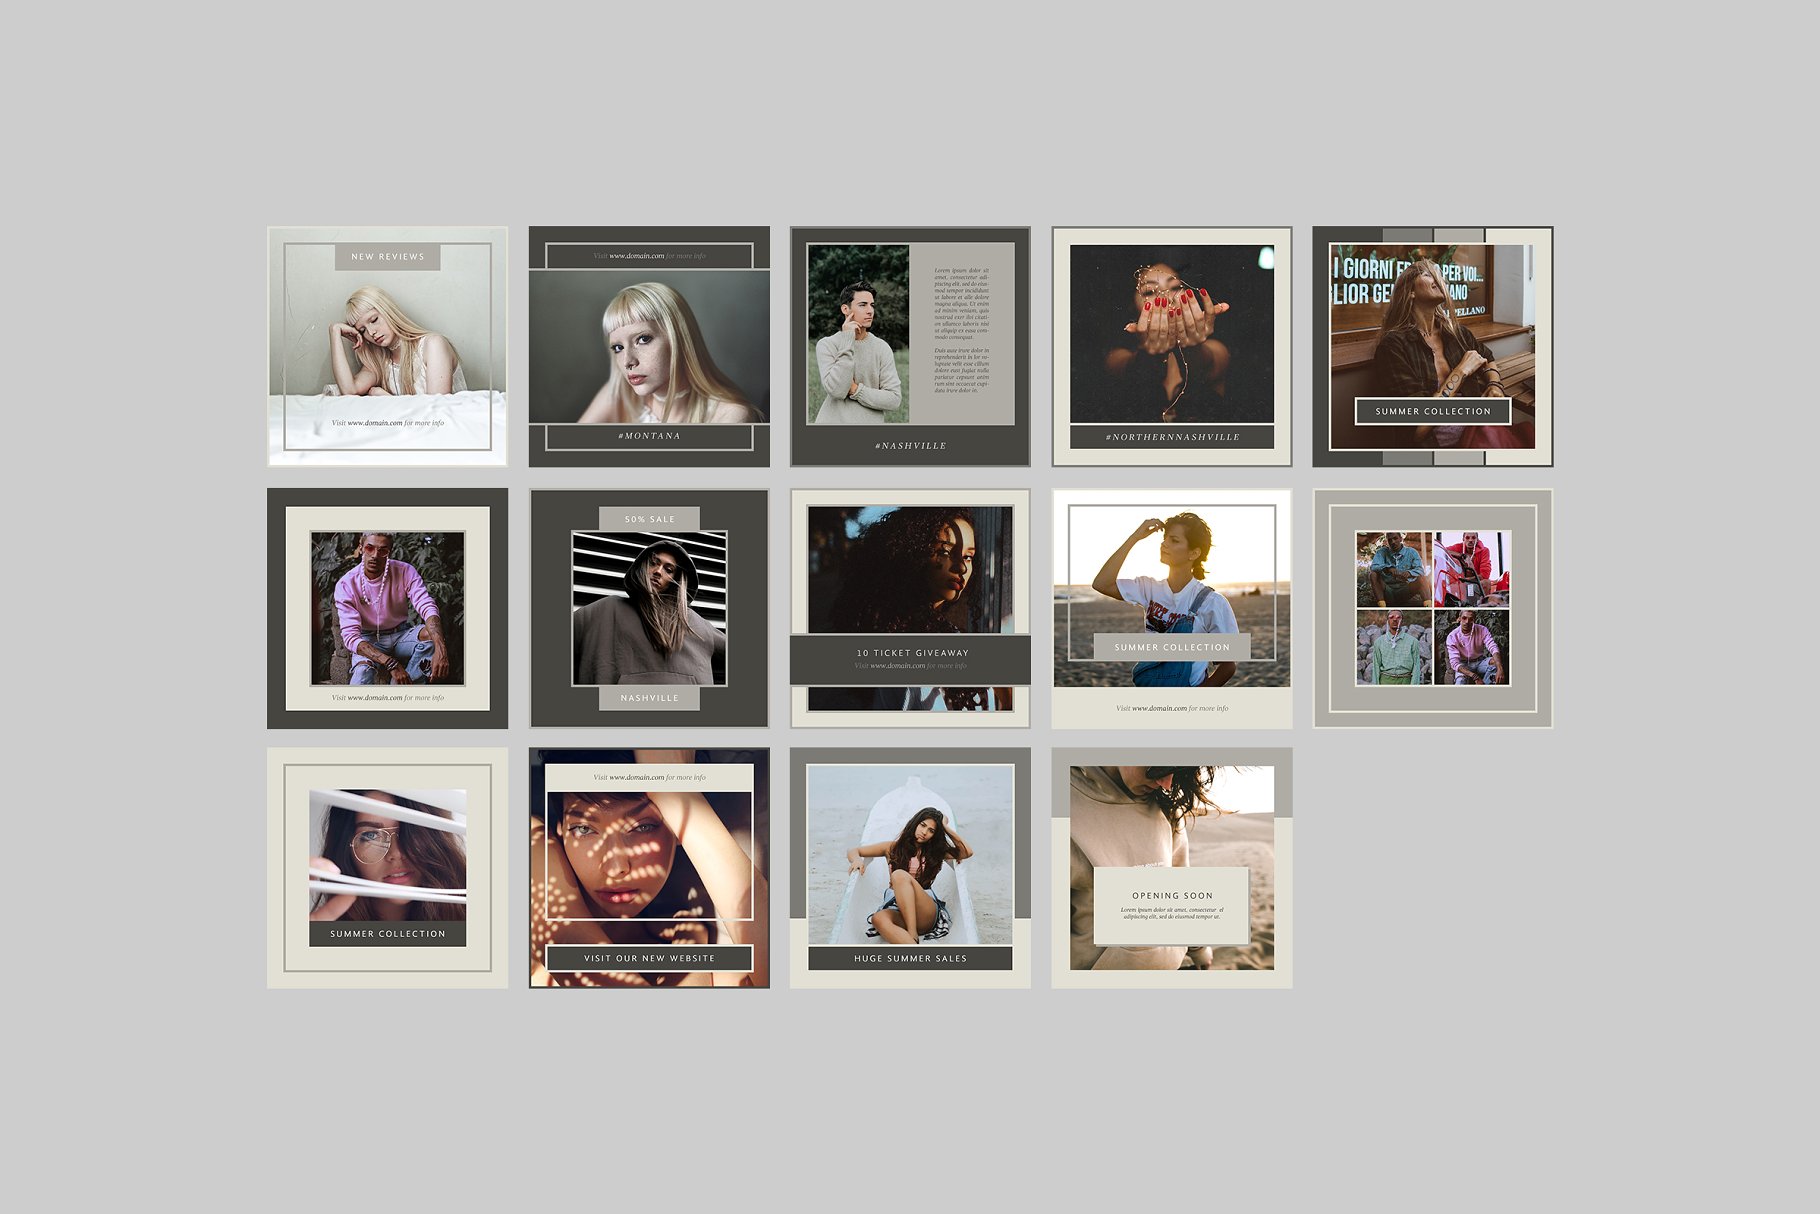 时尚模特摄影主题社交媒体贴图模板第一素材精选 Nashville Social Media Templates插图(6)